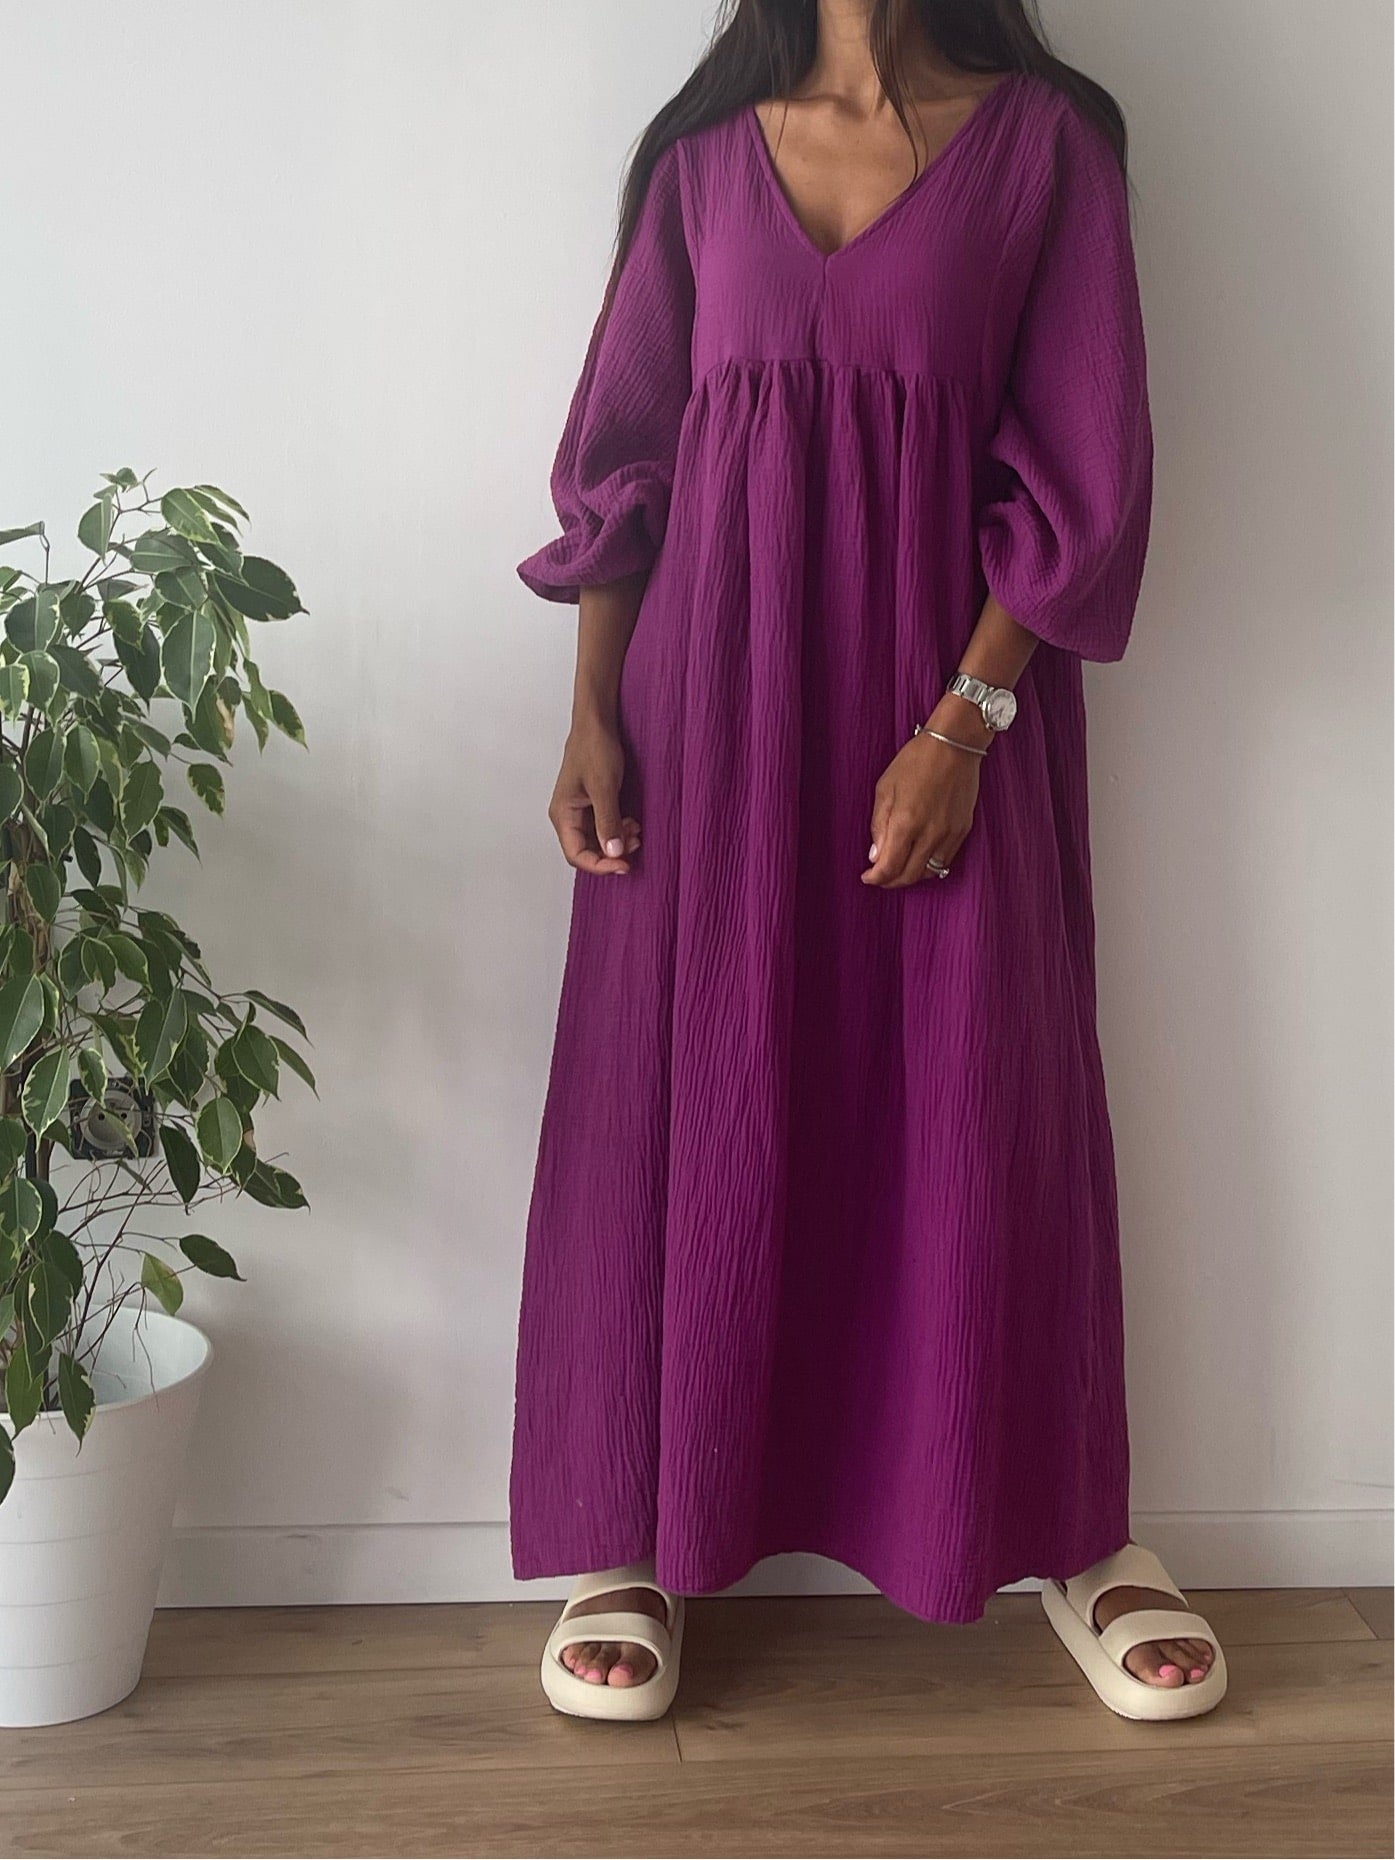 Robe violet intense en gaze de coton avec une silhouette fluide